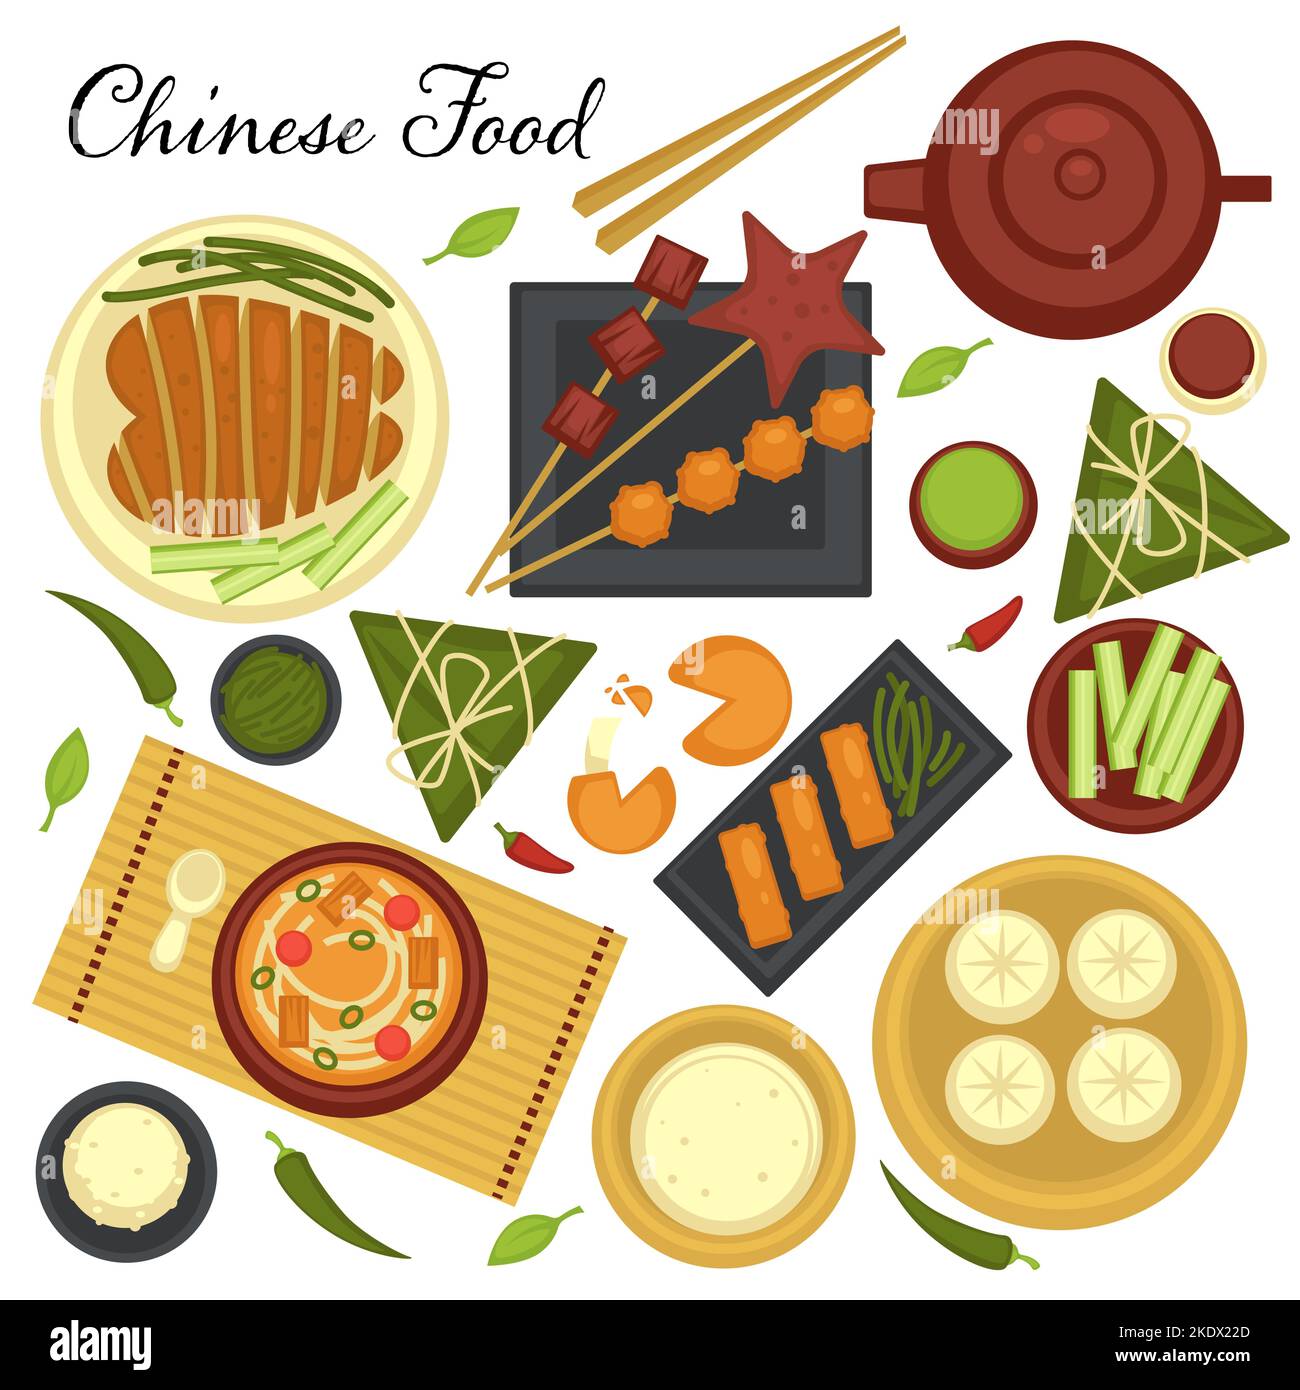 Menu de cuisine chinoise, ensemble de plats et recettes traditionnelles de pays asiatique. Soupes et viandes sur des assiettes servies avec des légumes et des baguettes vector Illustration de Vecteur